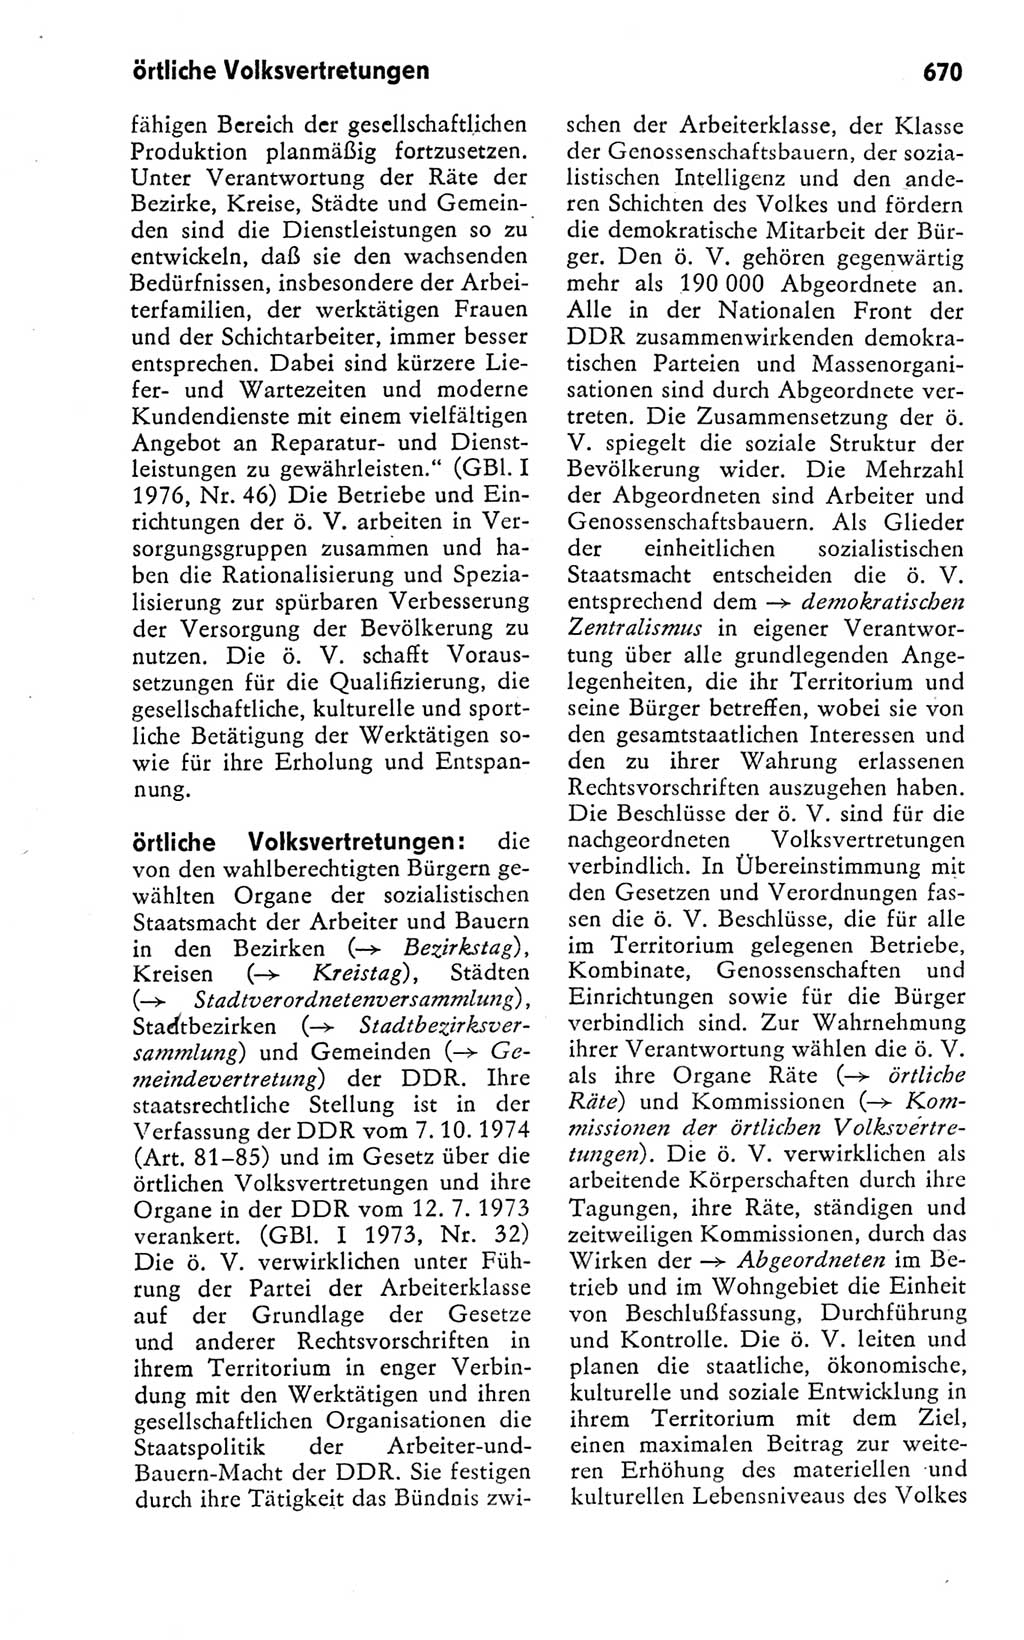 Kleines politisches Wörterbuch [Deutsche Demokratische Republik (DDR)] 1978, Seite 670 (Kl. pol. Wb. DDR 1978, S. 670)